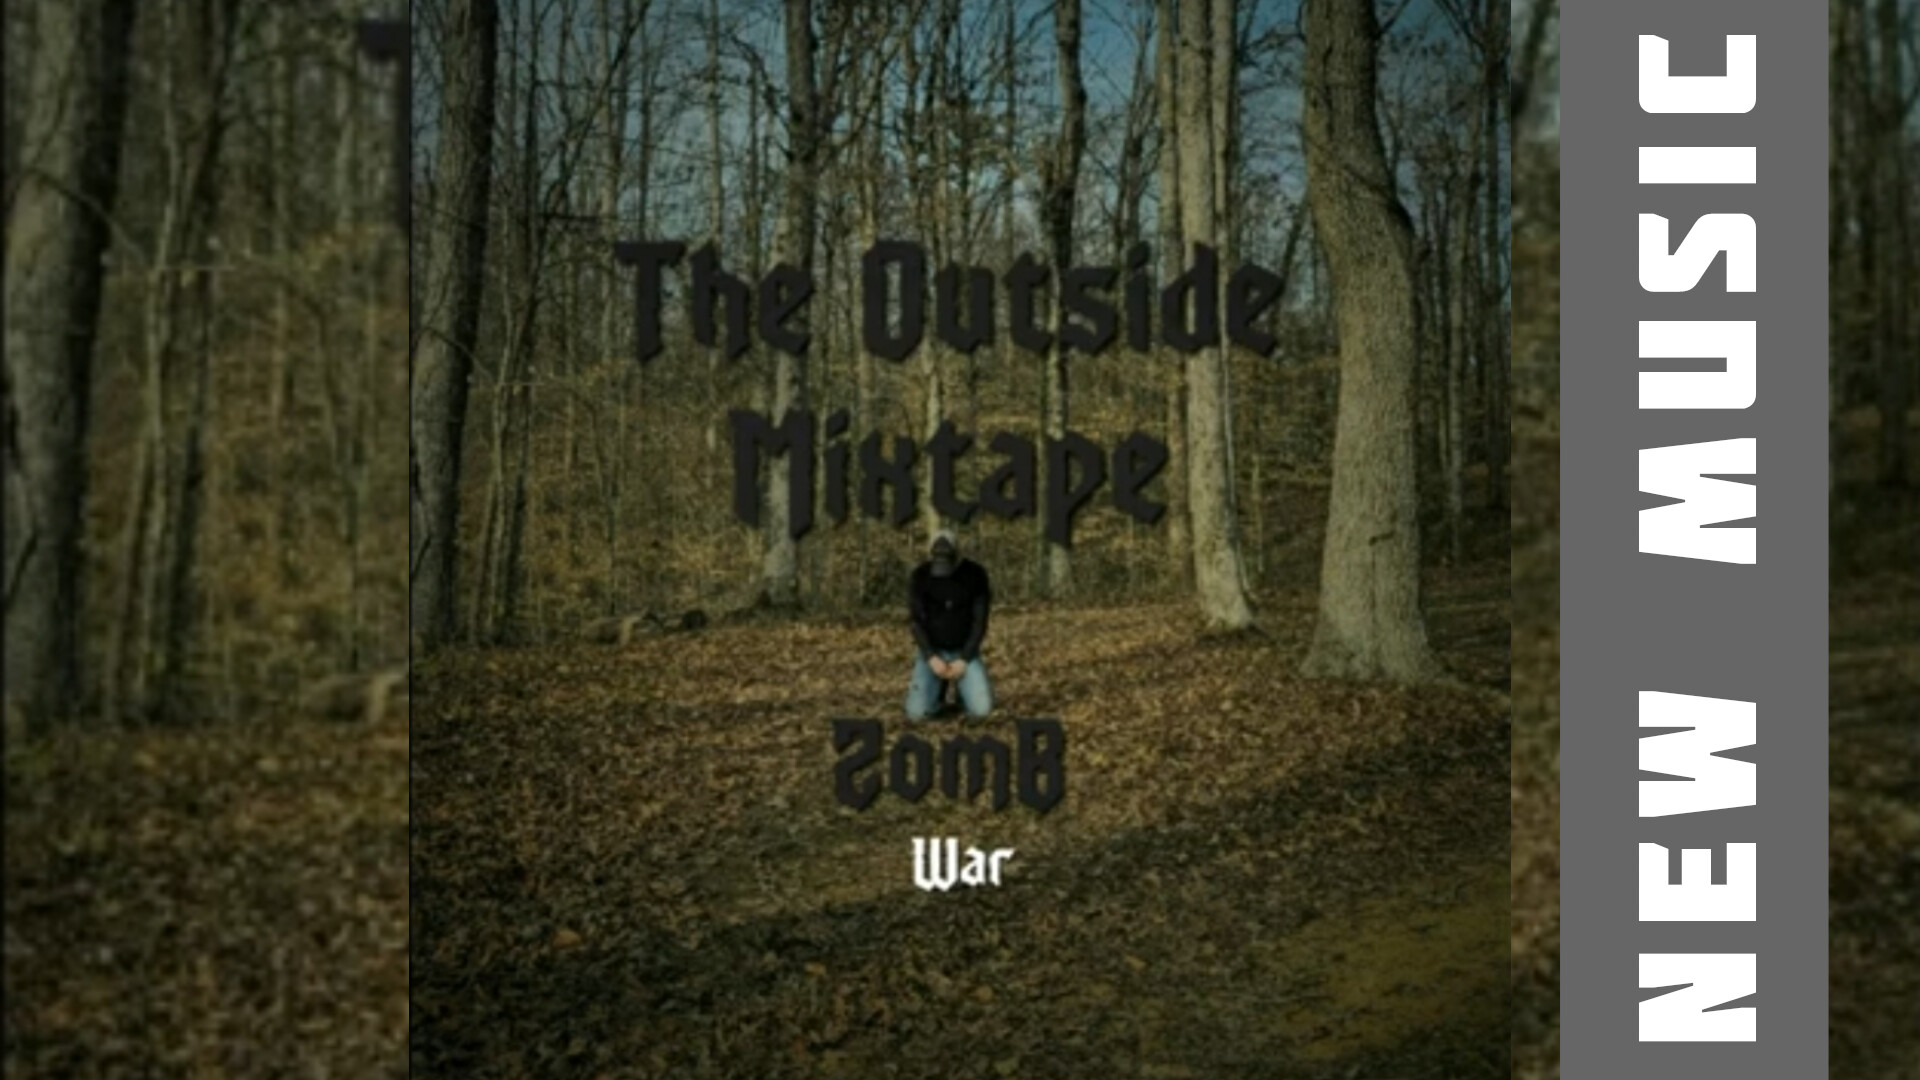 ZomB drops “War”, new single